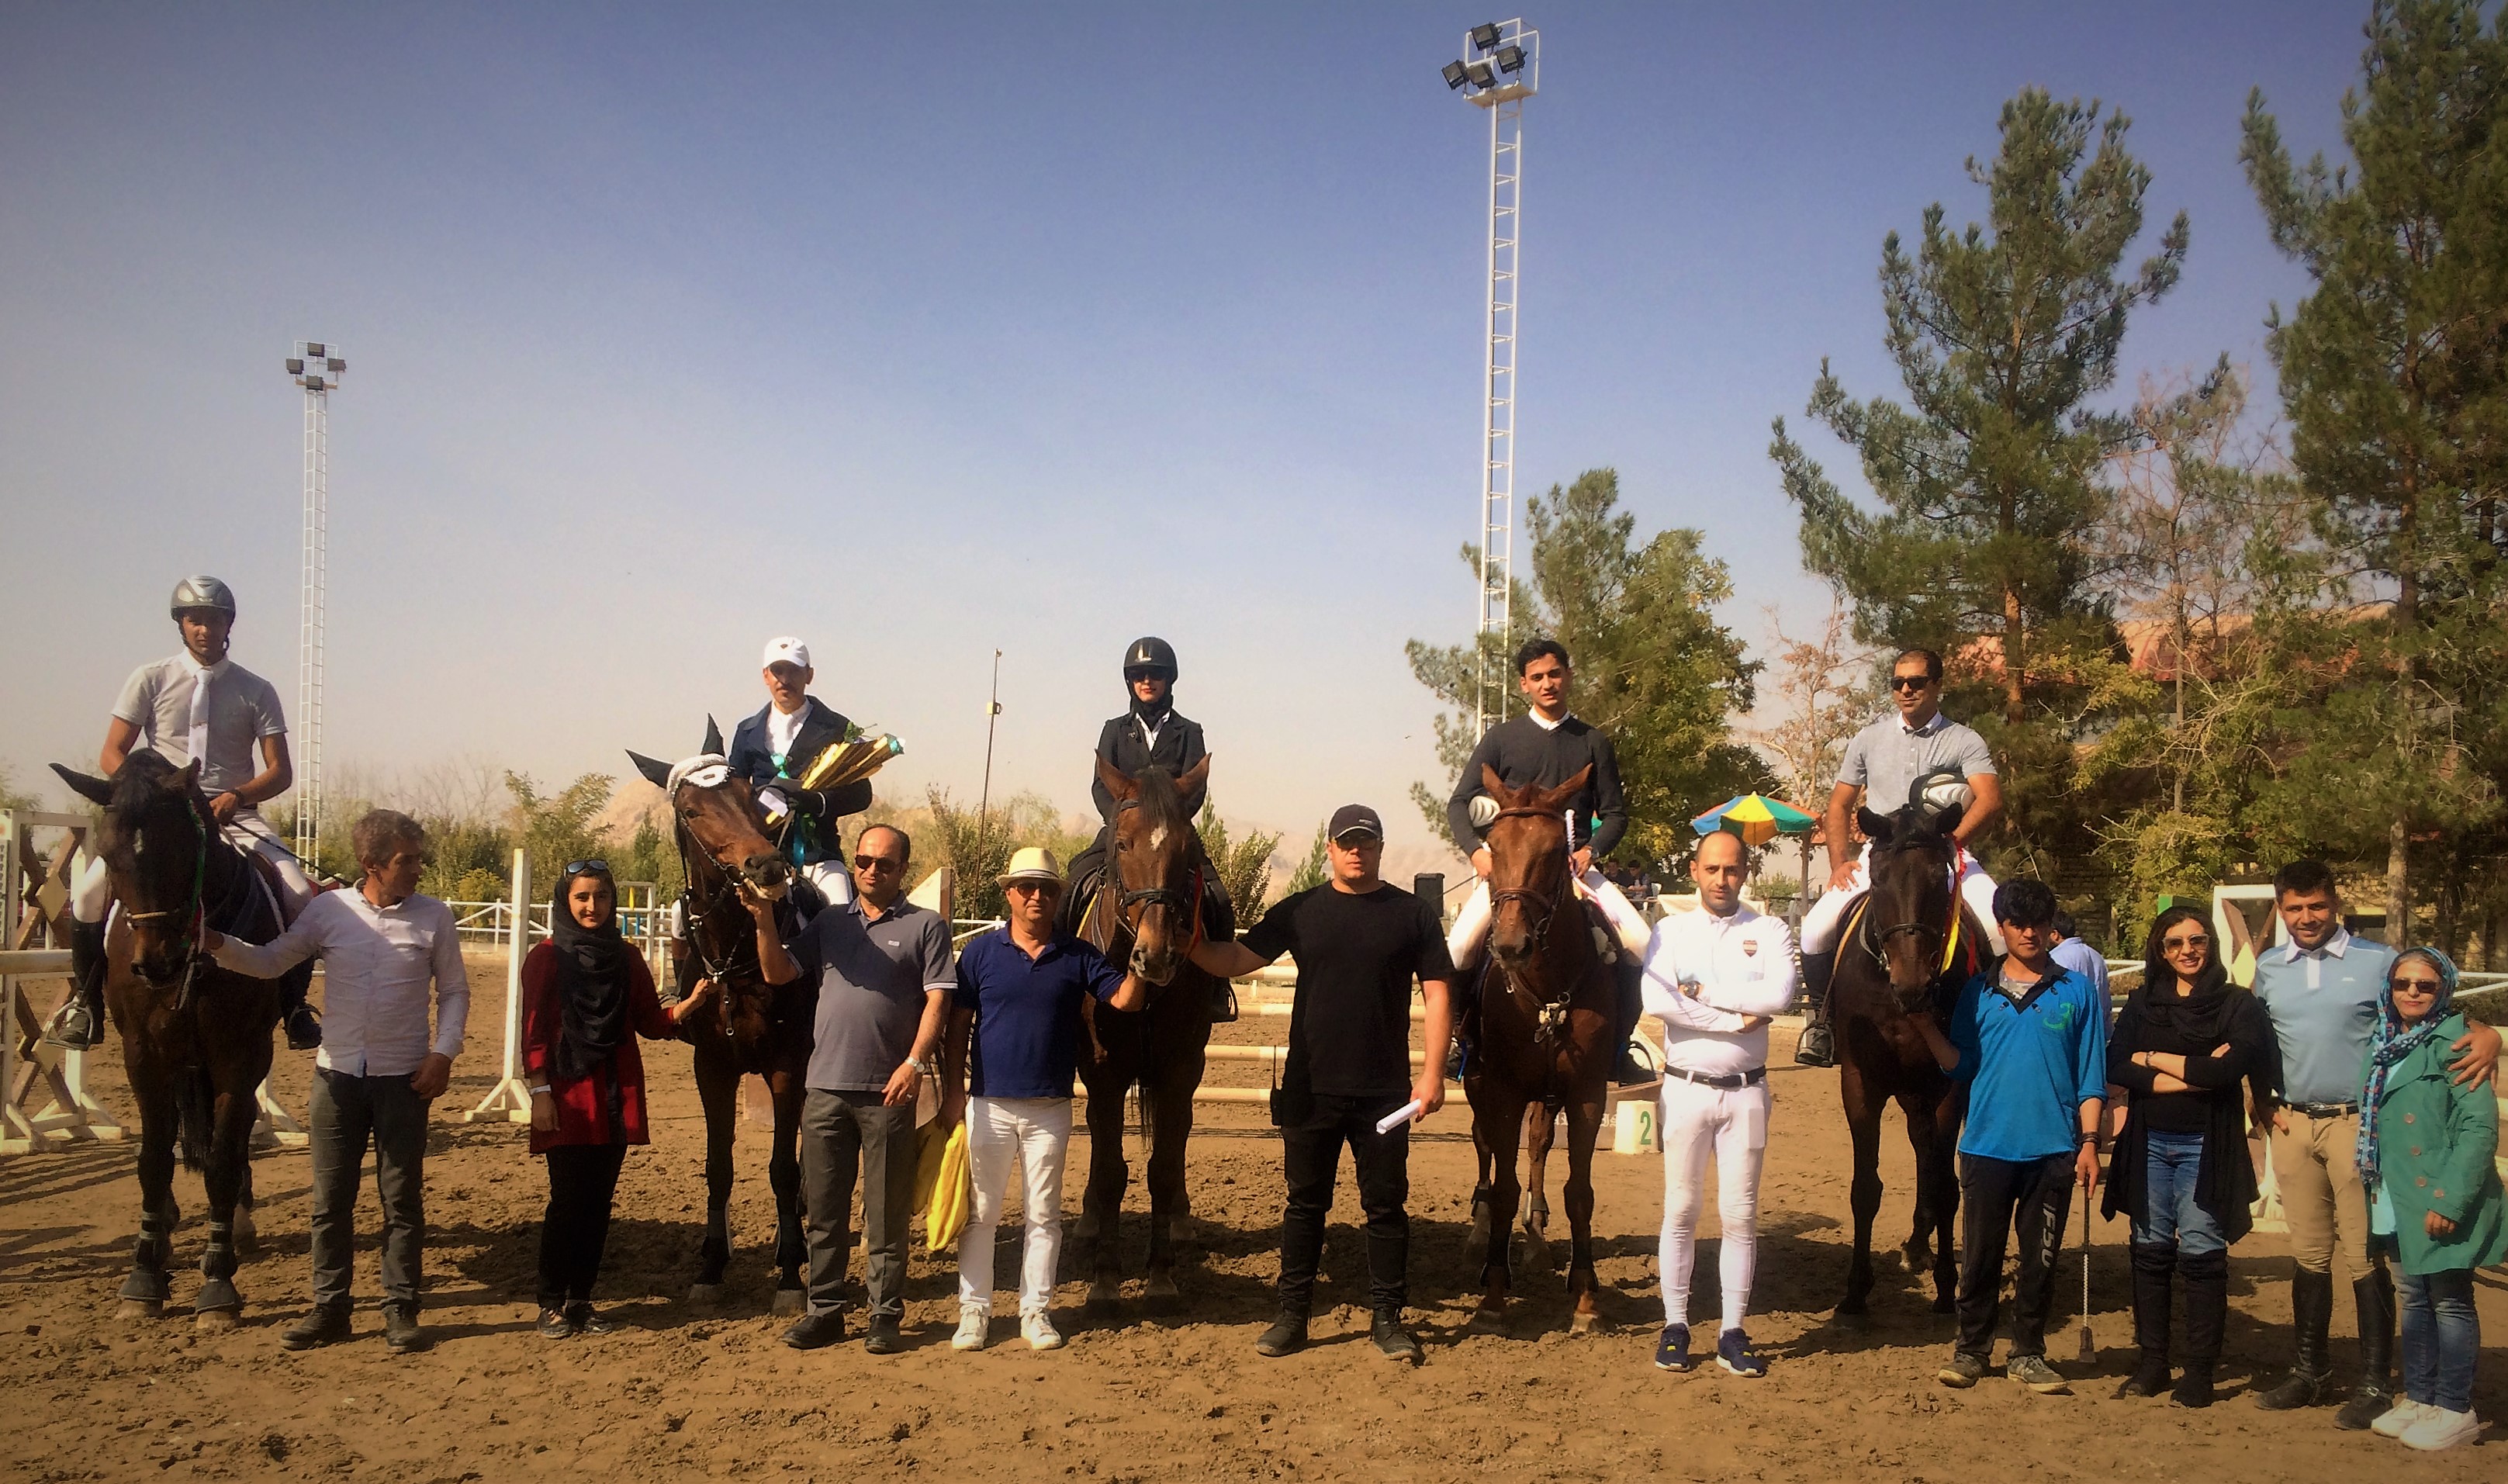 نتایج سیزدهمین مسابقه پرش با اسب هیأت سوارکاری استان اصفهان در سال ۹۶